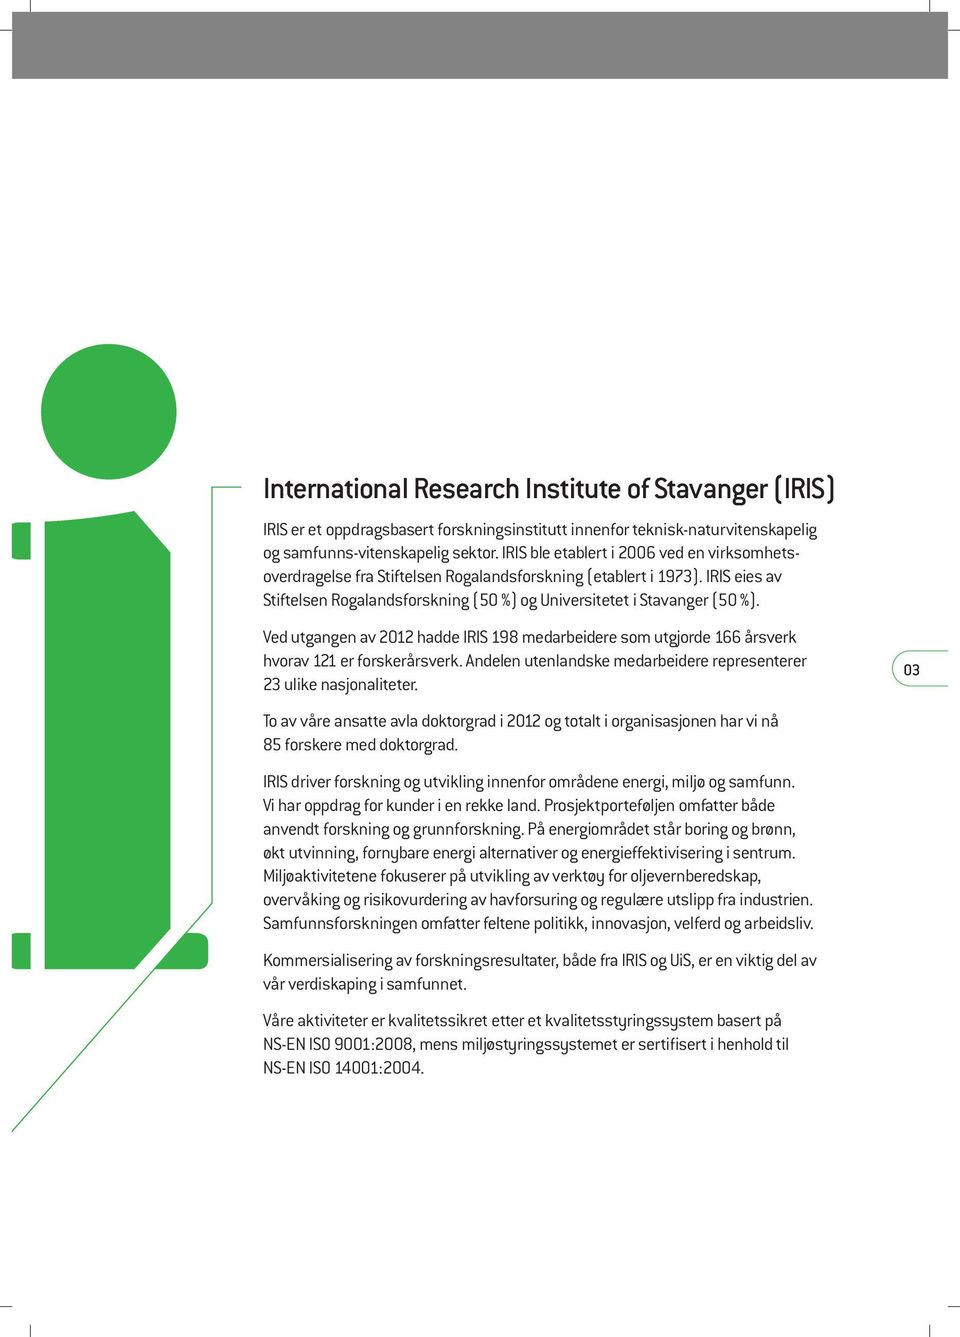 Ved utgangen av 2012 hadde IRIS 198 medarbeidere som utgjorde 166 årsverk hvorav 121 er forskerårsverk. Andelen utenlandske medarbeidere representerer 23 ulike nasjonaliteter.